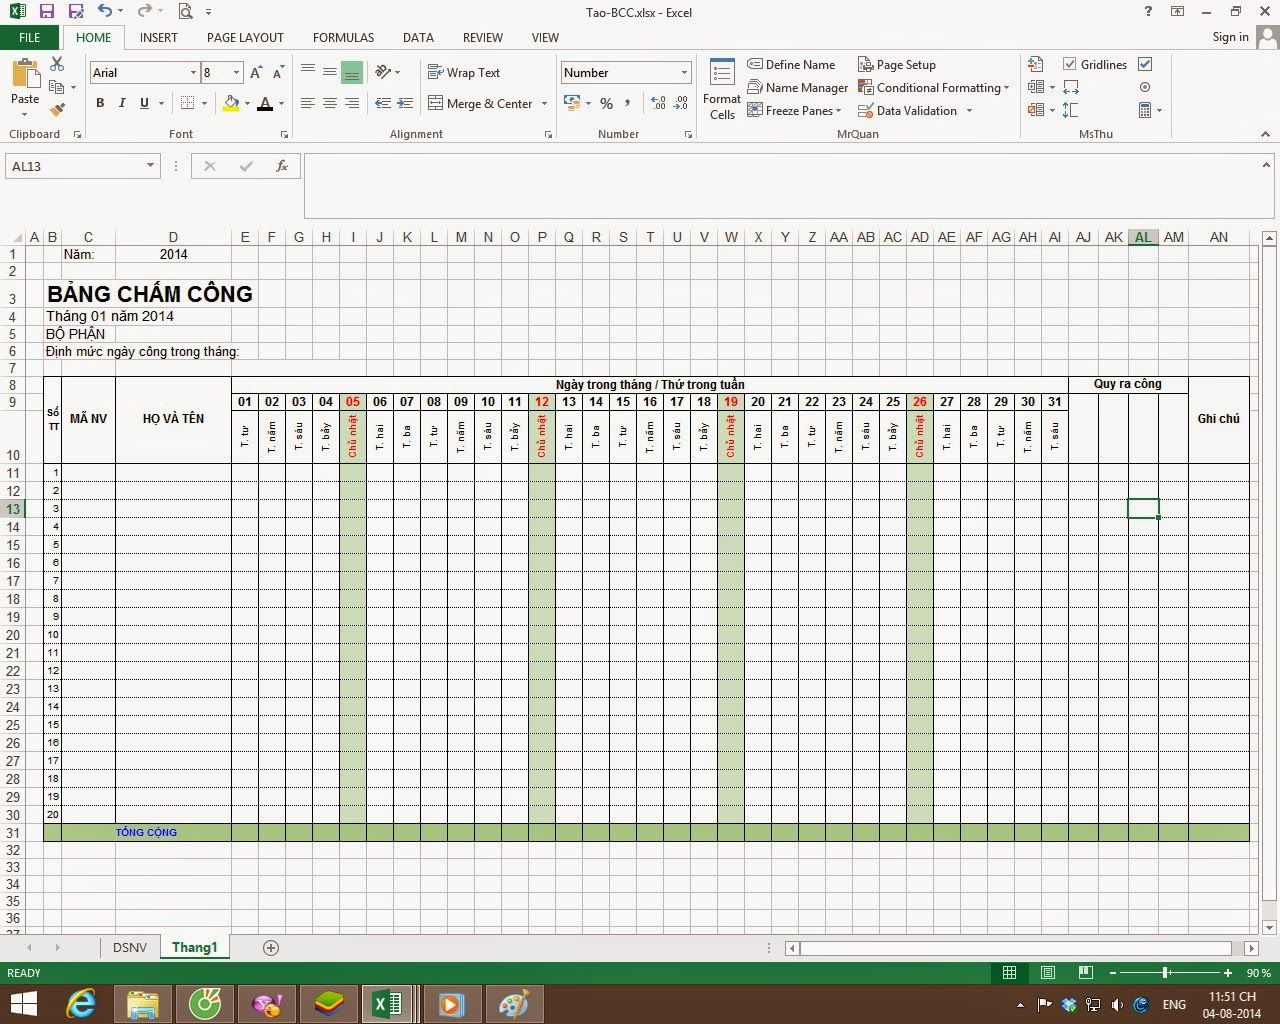 Cách tính bảng chấm công trong excel được thực hiện như thế nào? Hướng dẫn cách tạo bảng chấm công trên Excel chi tiết nhất 44